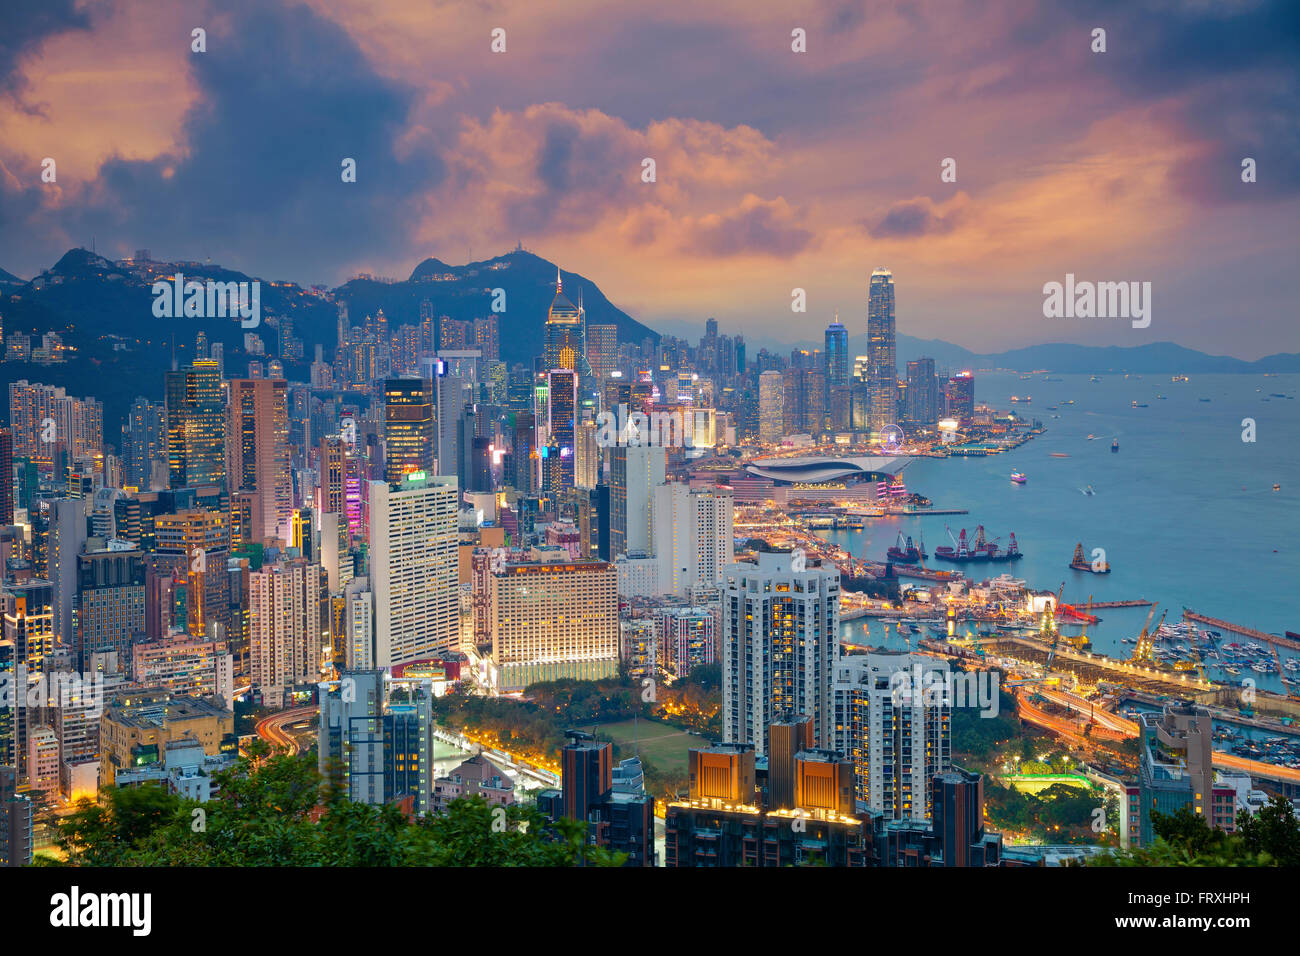 Hong Kong. Image of Hong Kong skyline during dramatic sunset. Stock Photo